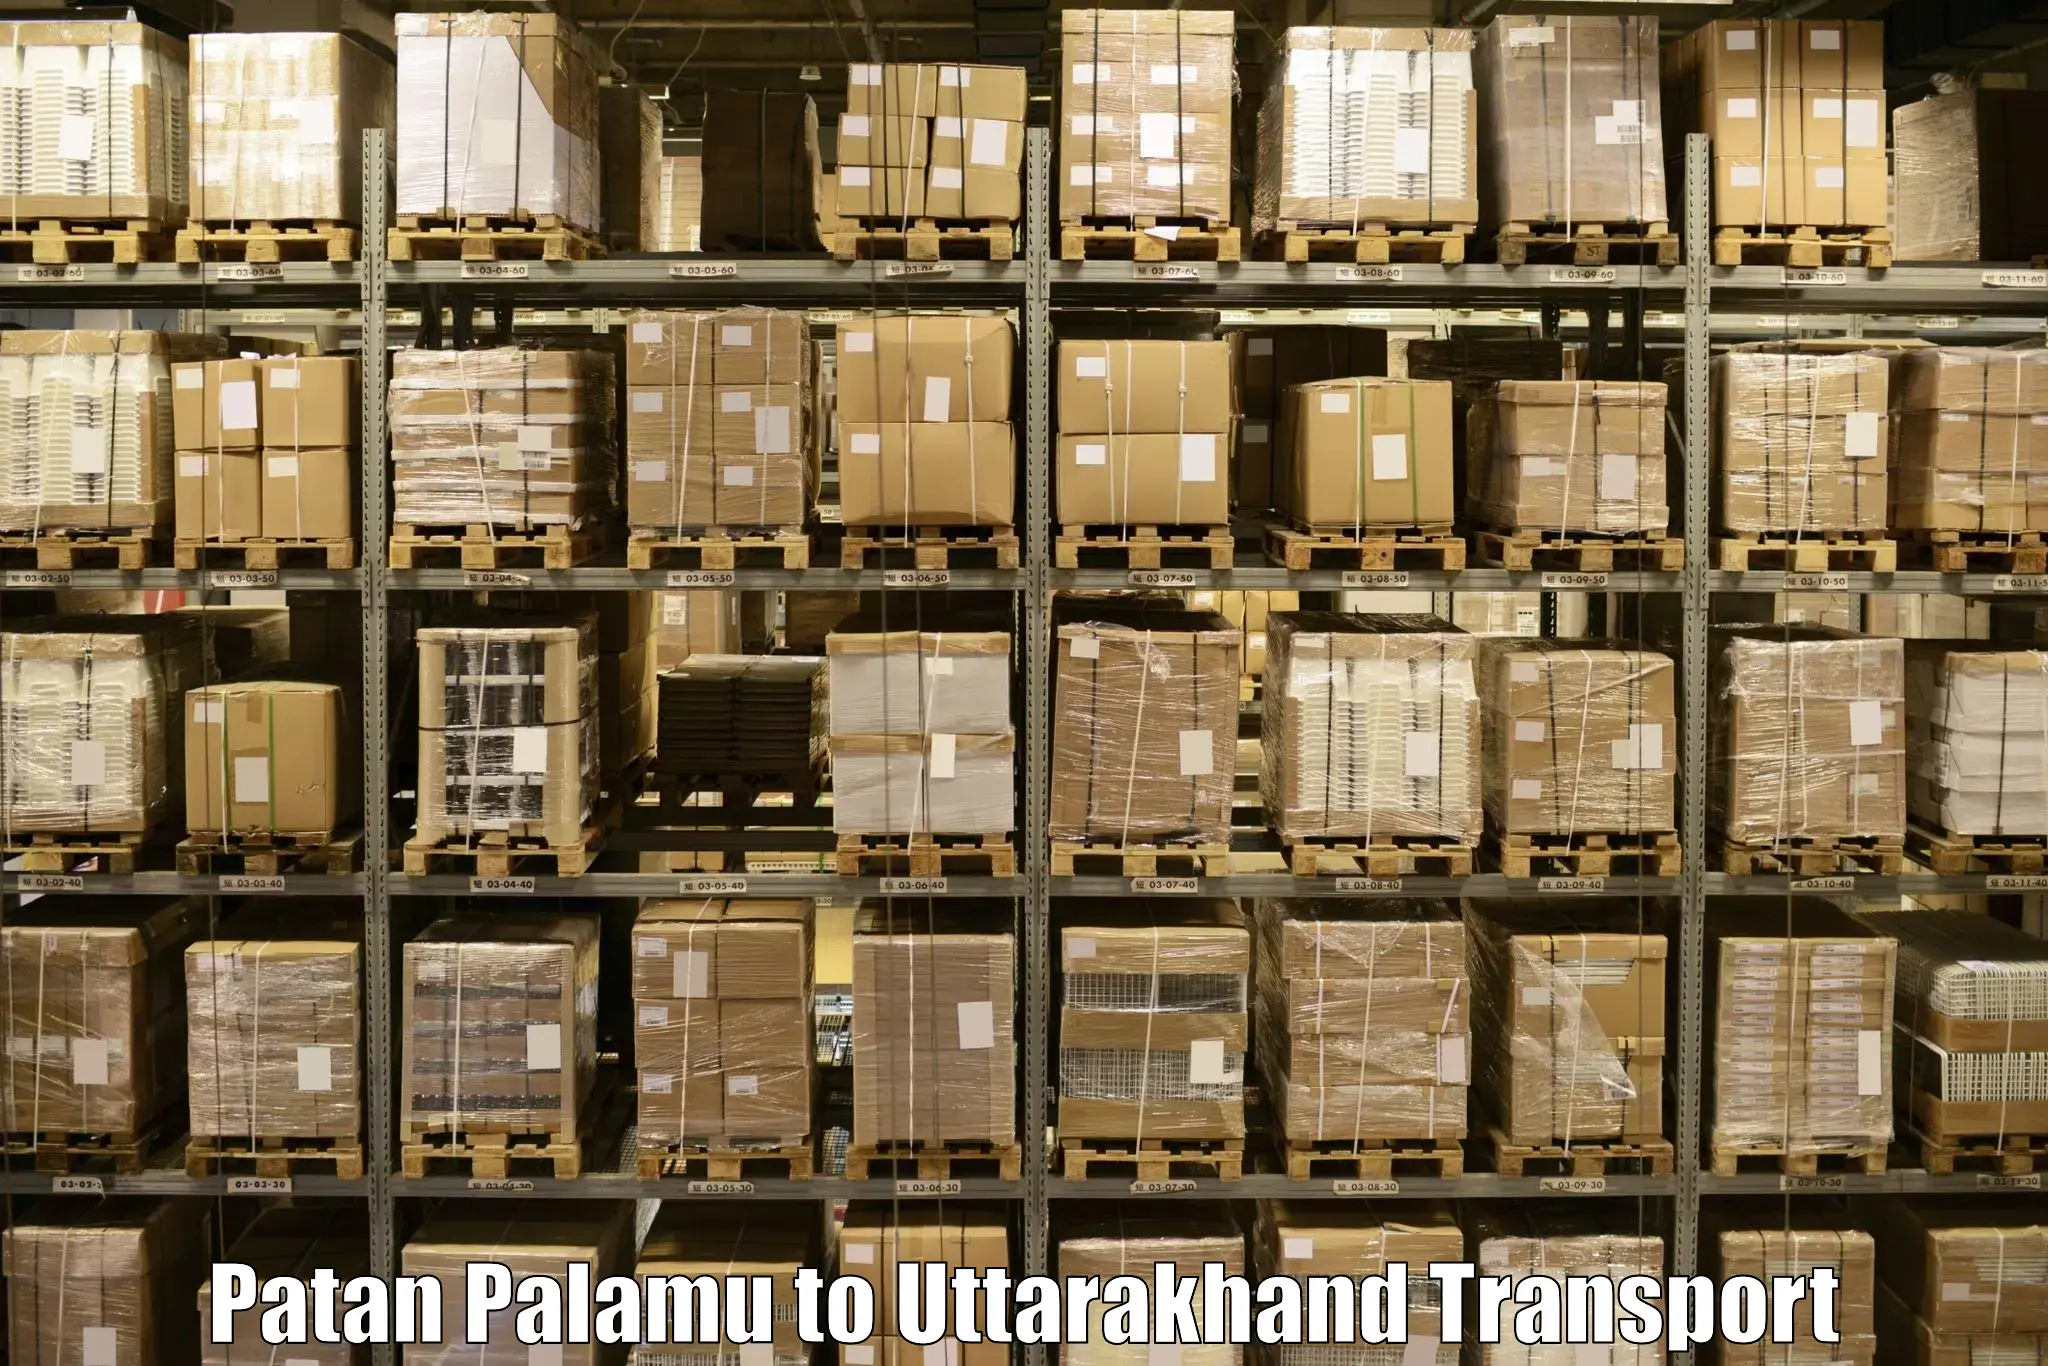 Daily parcel service transport Patan Palamu to Lansdowne